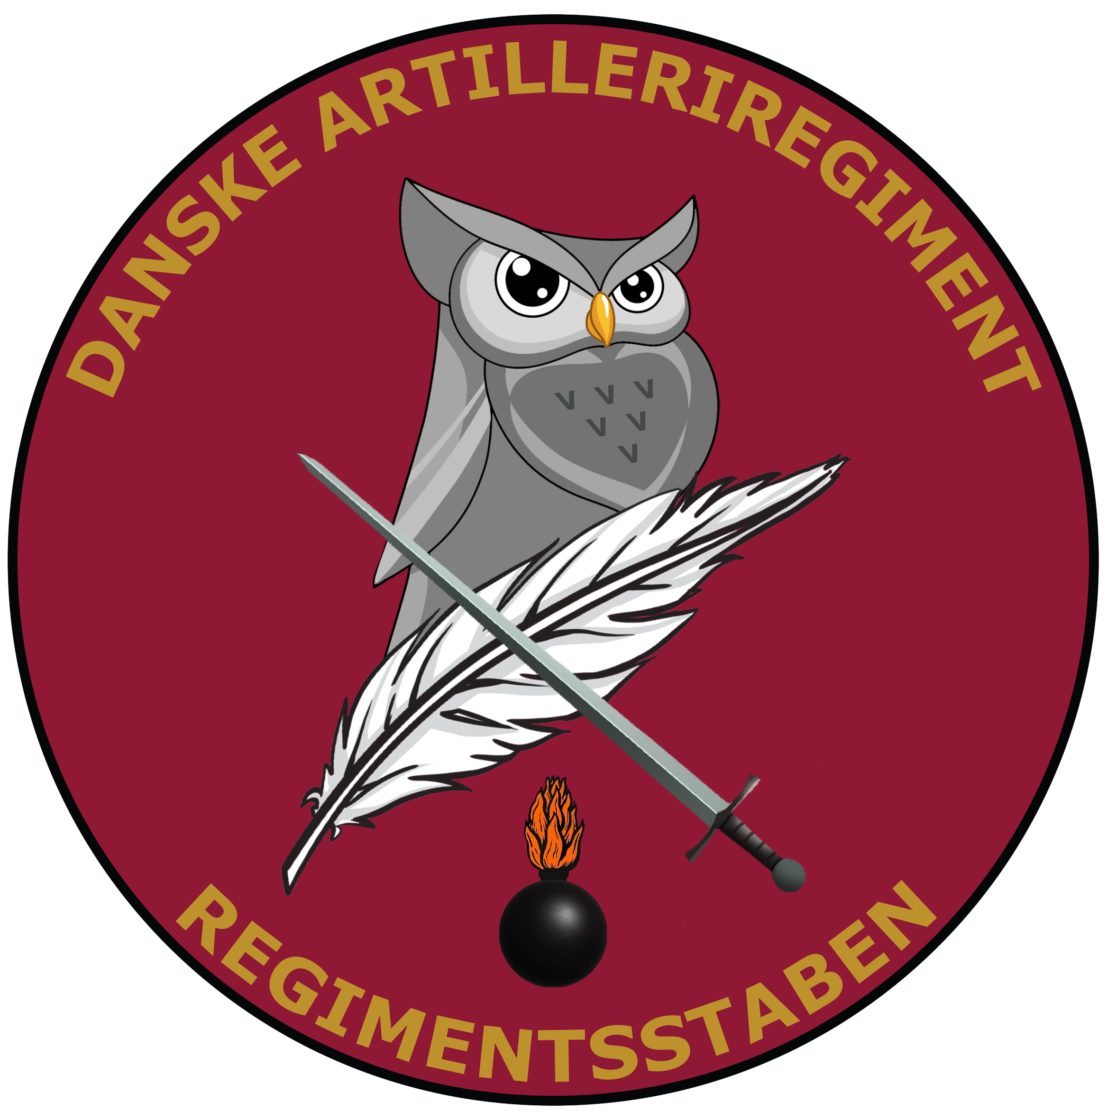 Regimentsstaben